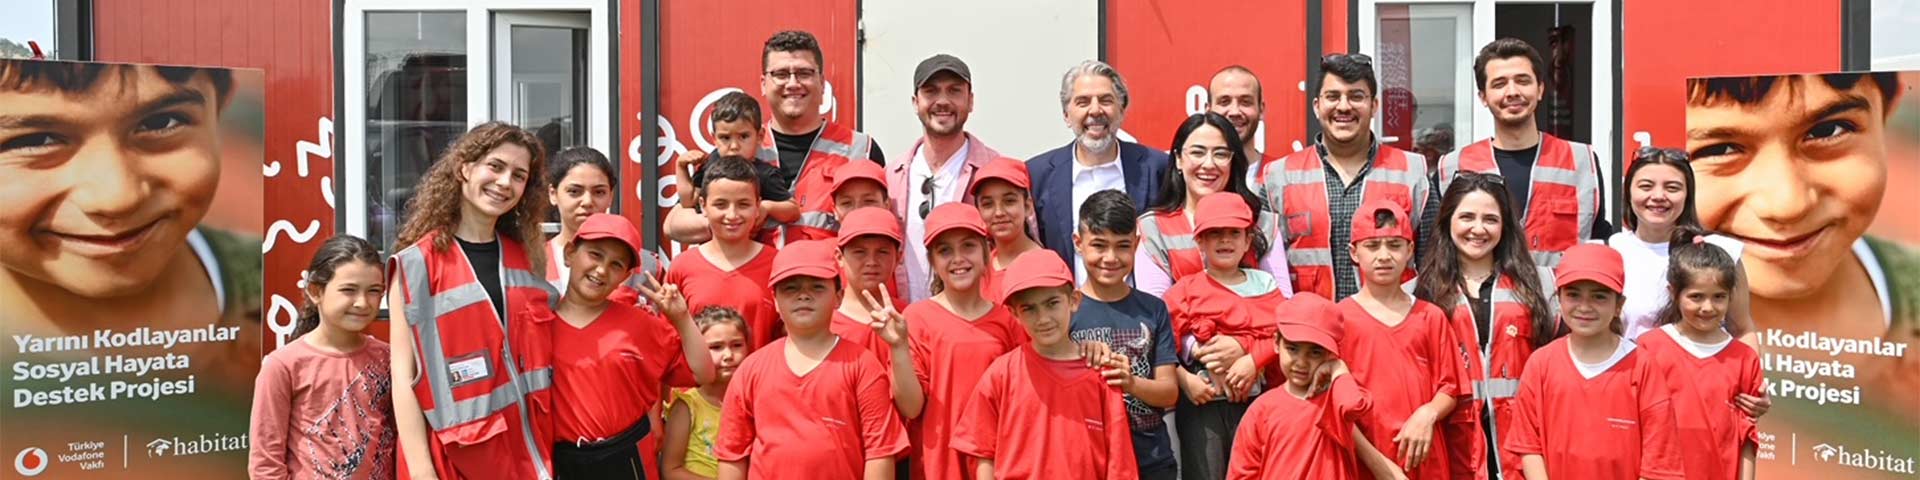 Aras Bulut İynemli, Türkiye Vodafone Vakfı "Yarını Kodlayanlar" Projesi İçin Kahramanmaraş’ta Çocuklarla Buluştu